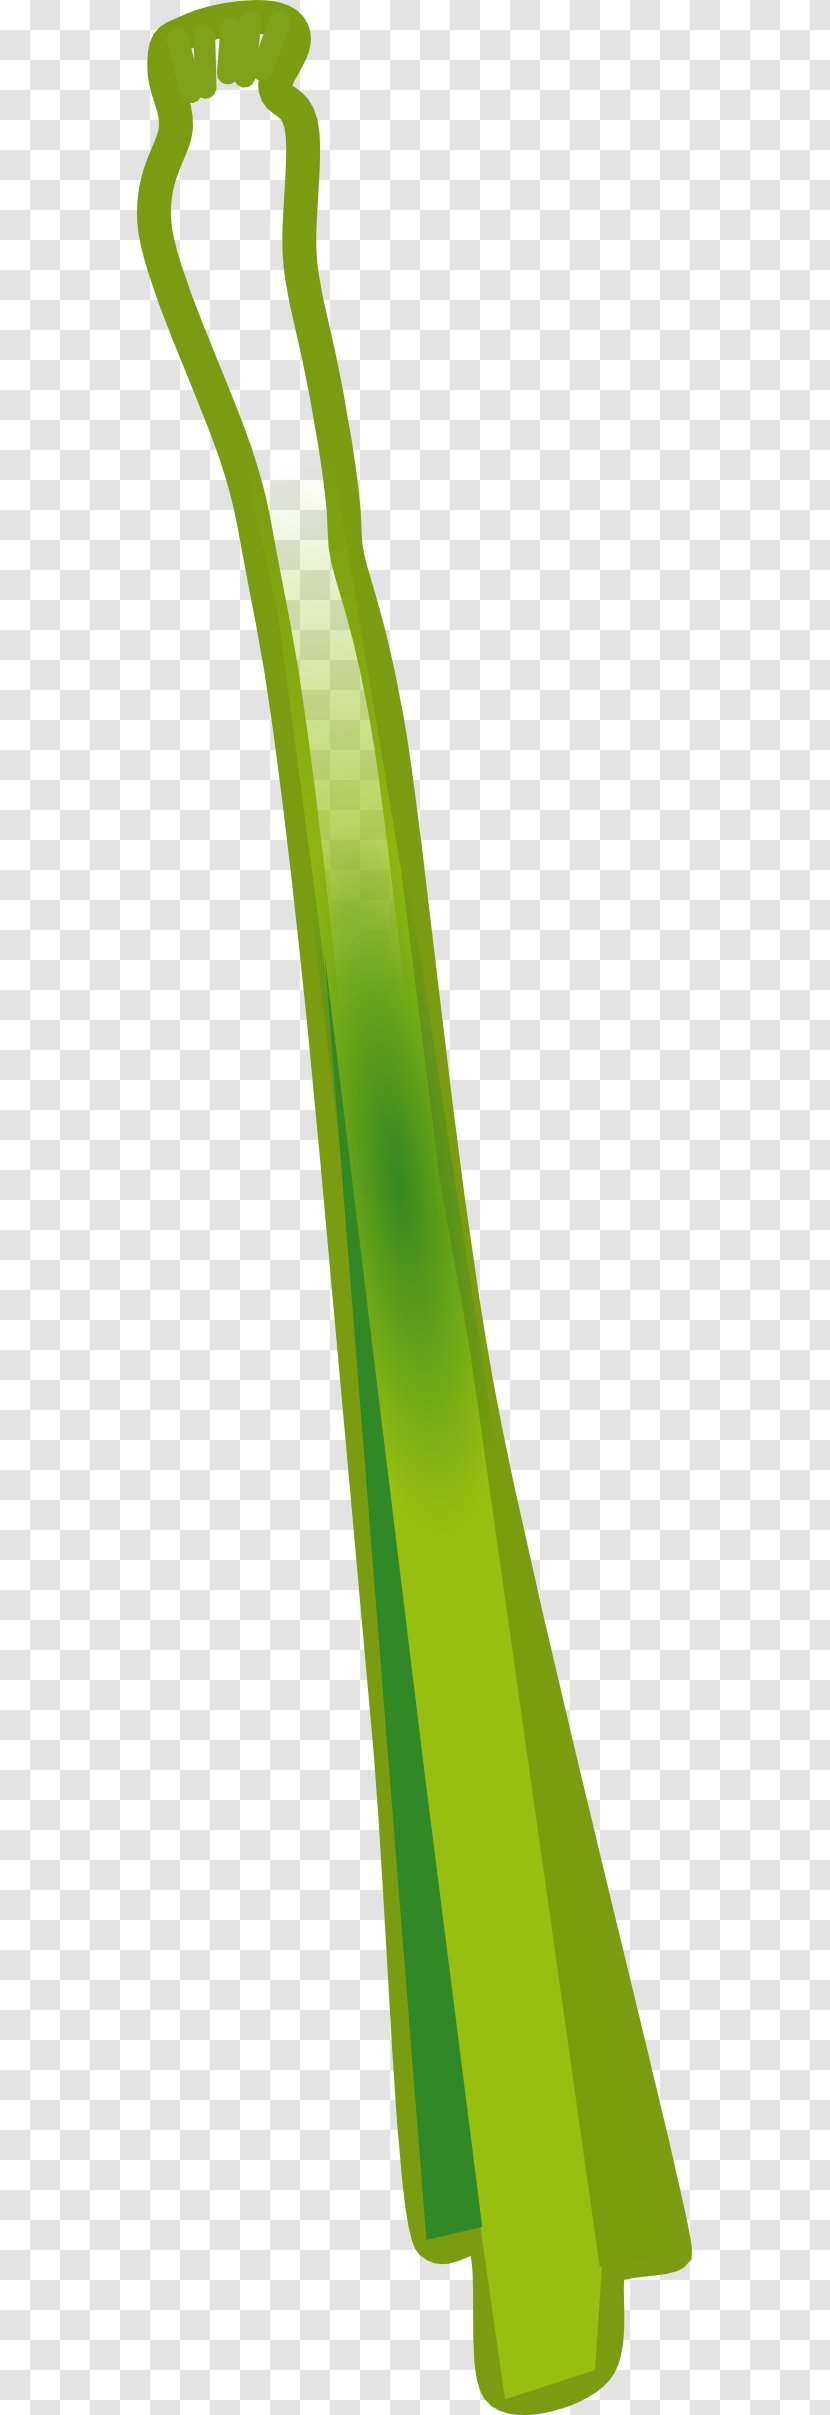 Leek Clip Art - Celery - Onion Transparent PNG